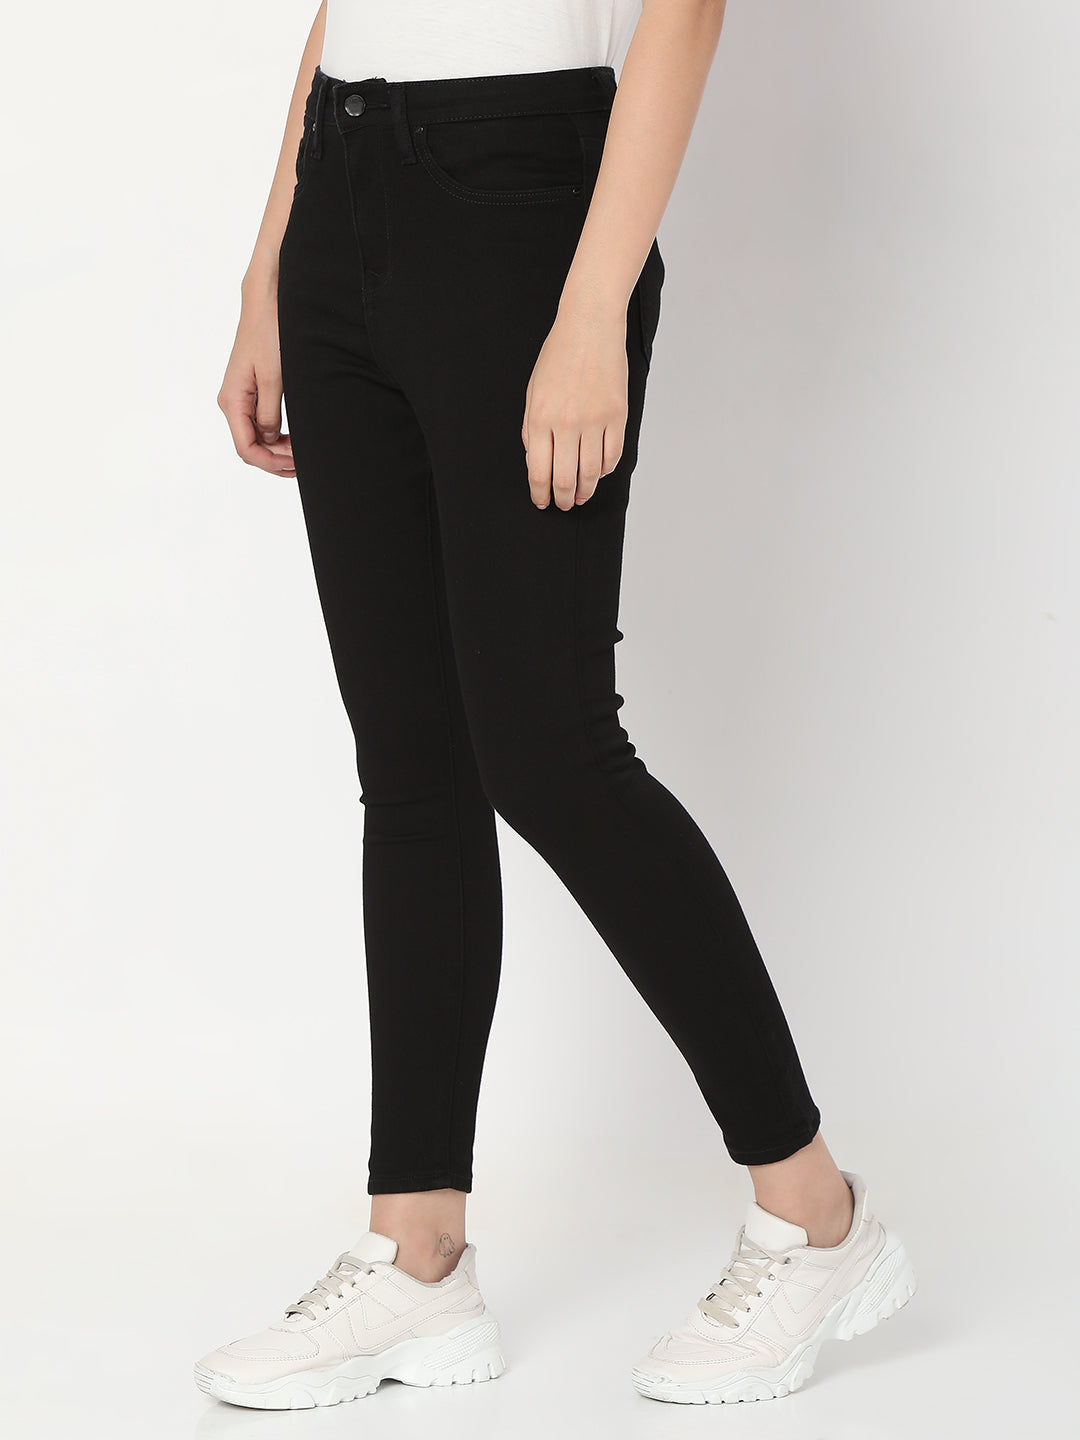 Spykar Black Lycra Super Skinny Ankle Length Jeans For Women (Alexa)